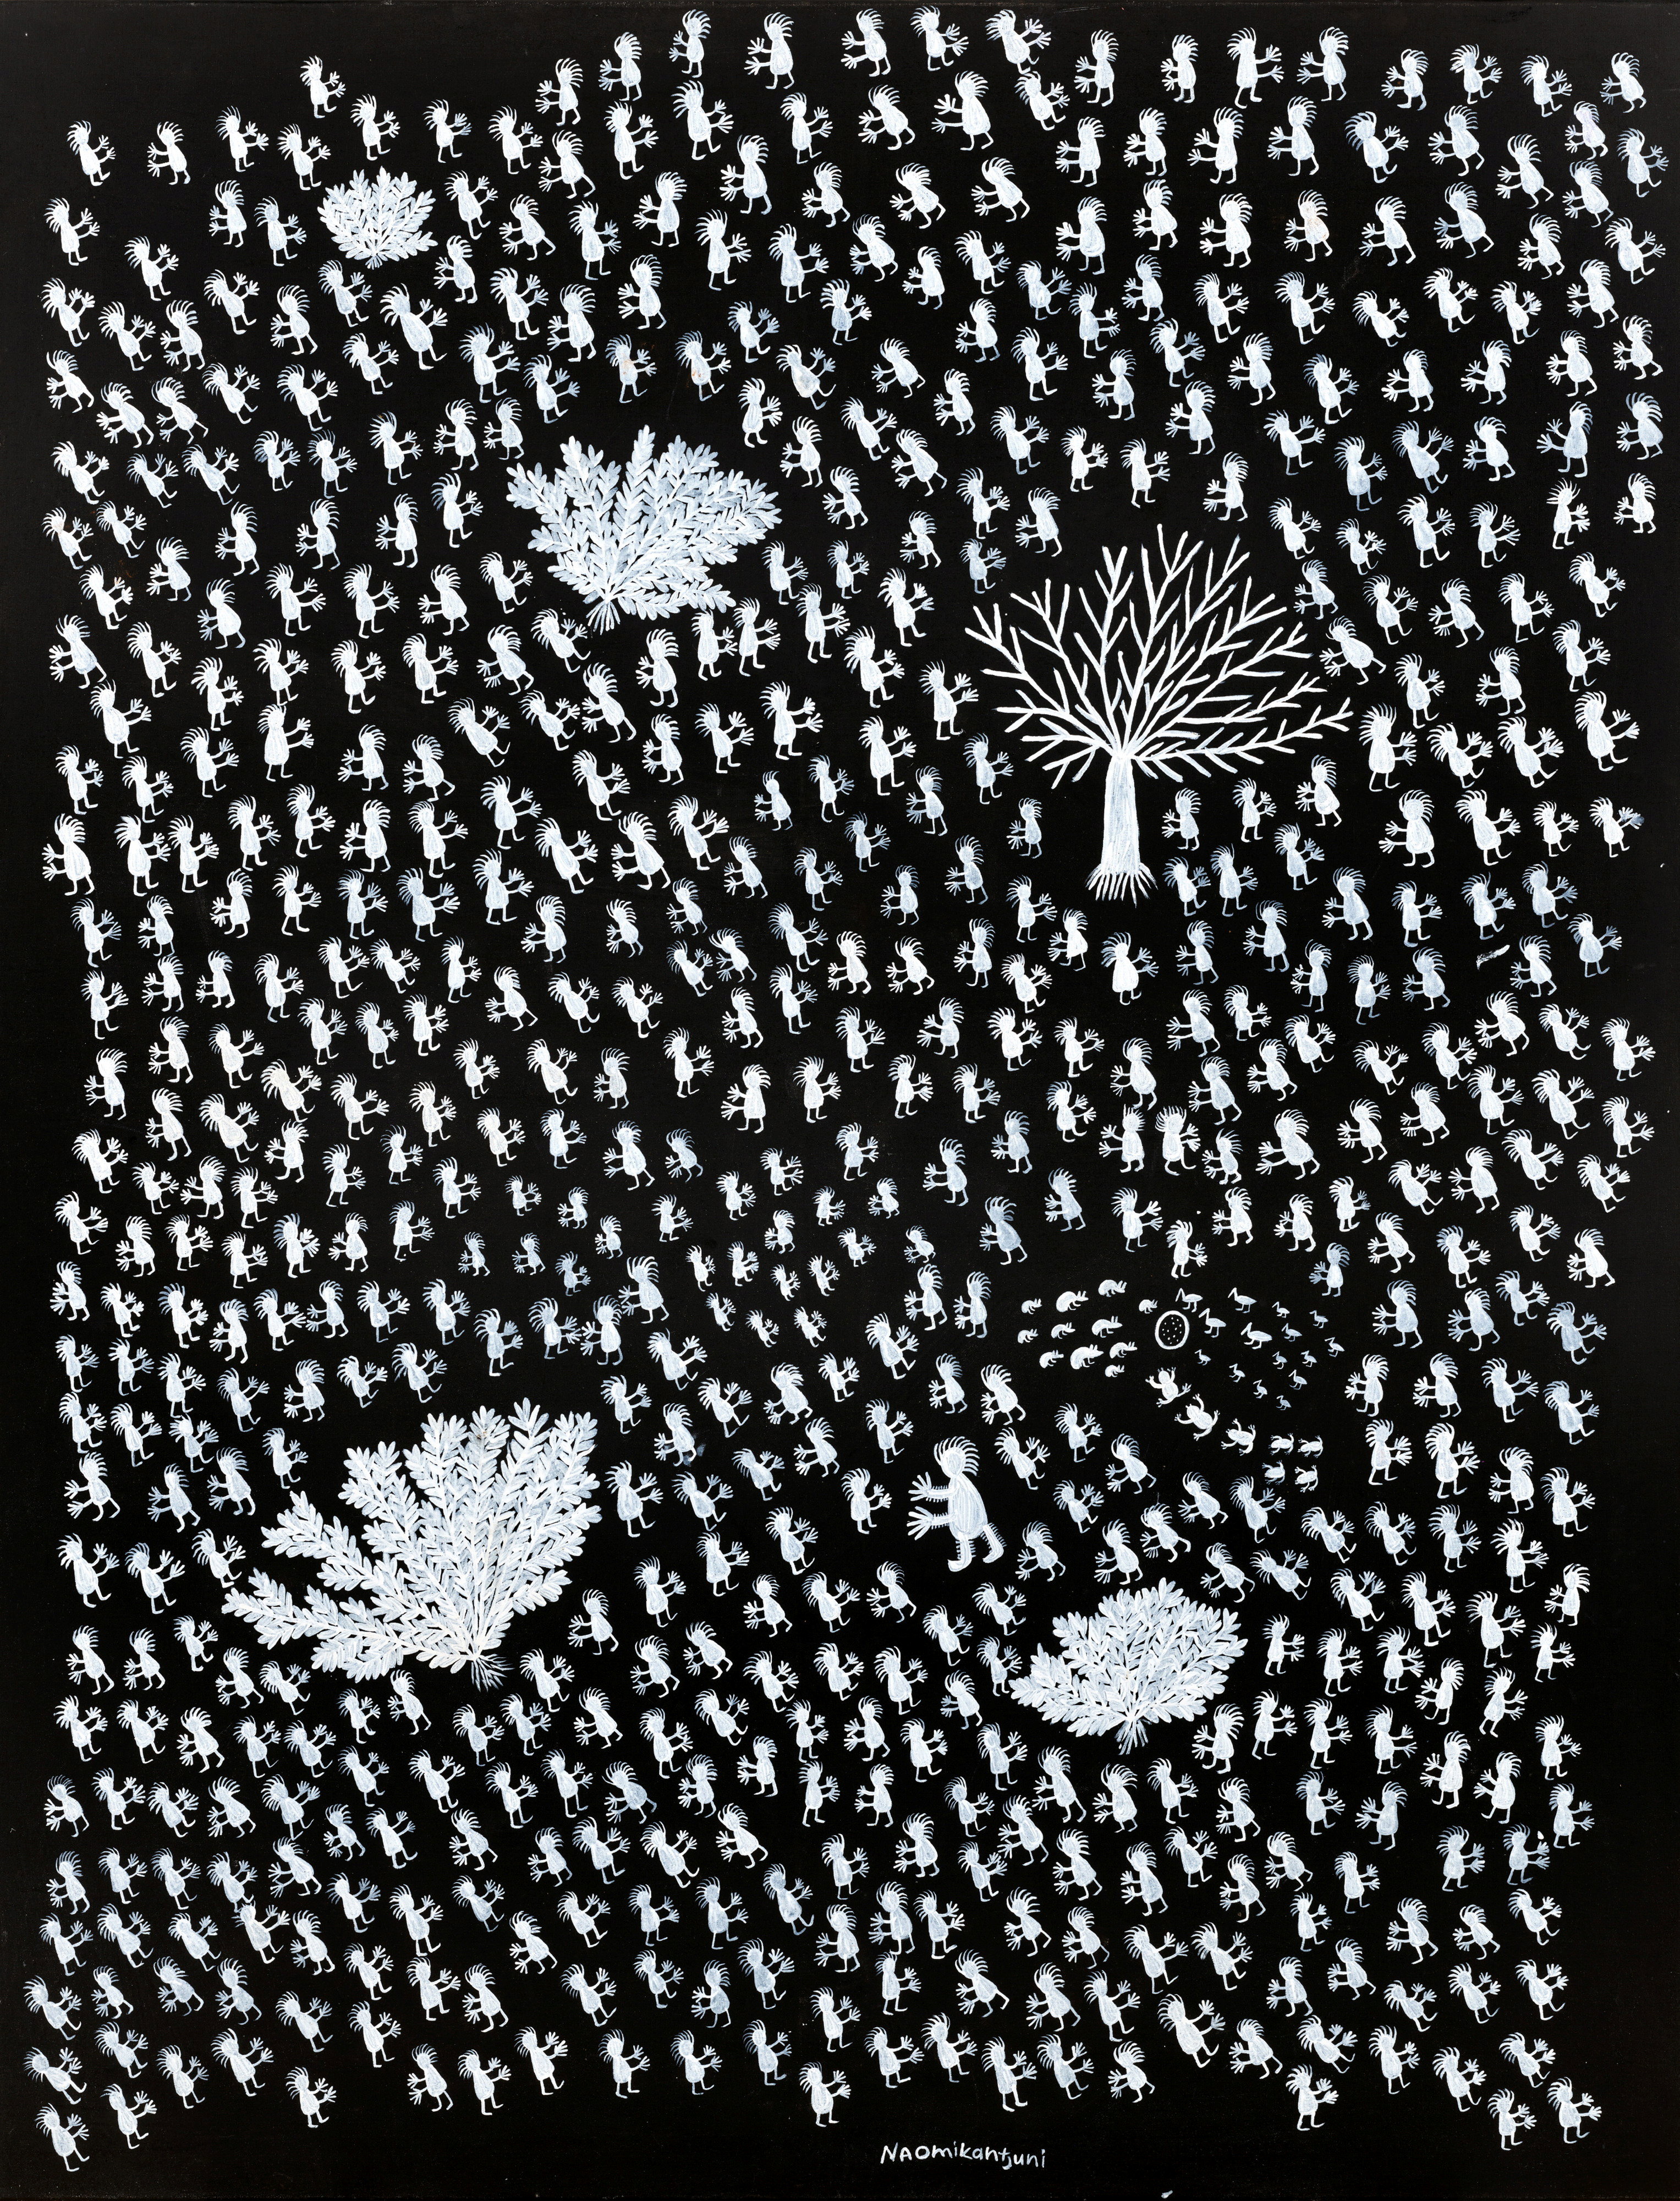 Une peinture en noir et blanc de Naomi Kantjuriny représentant de nombreux personnages, arbres et animaux